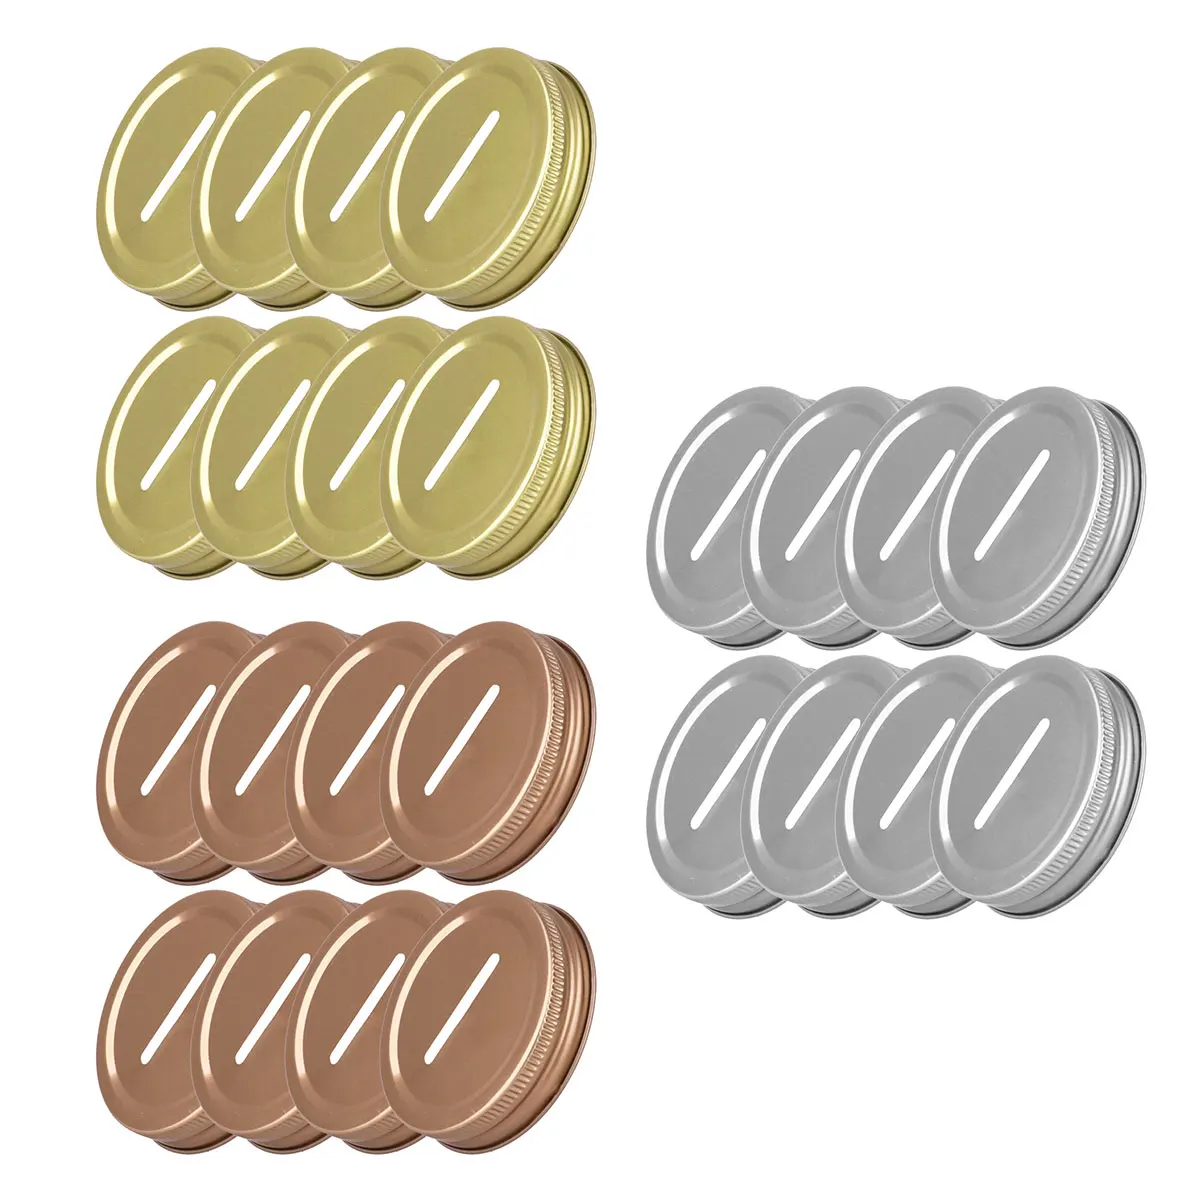 8 шт. 70 мм крышки для банок Mason с отделением для монет полированные стойкие к ржавчине нержавеющие металлические крышки для стаканов консервные копилки крышки